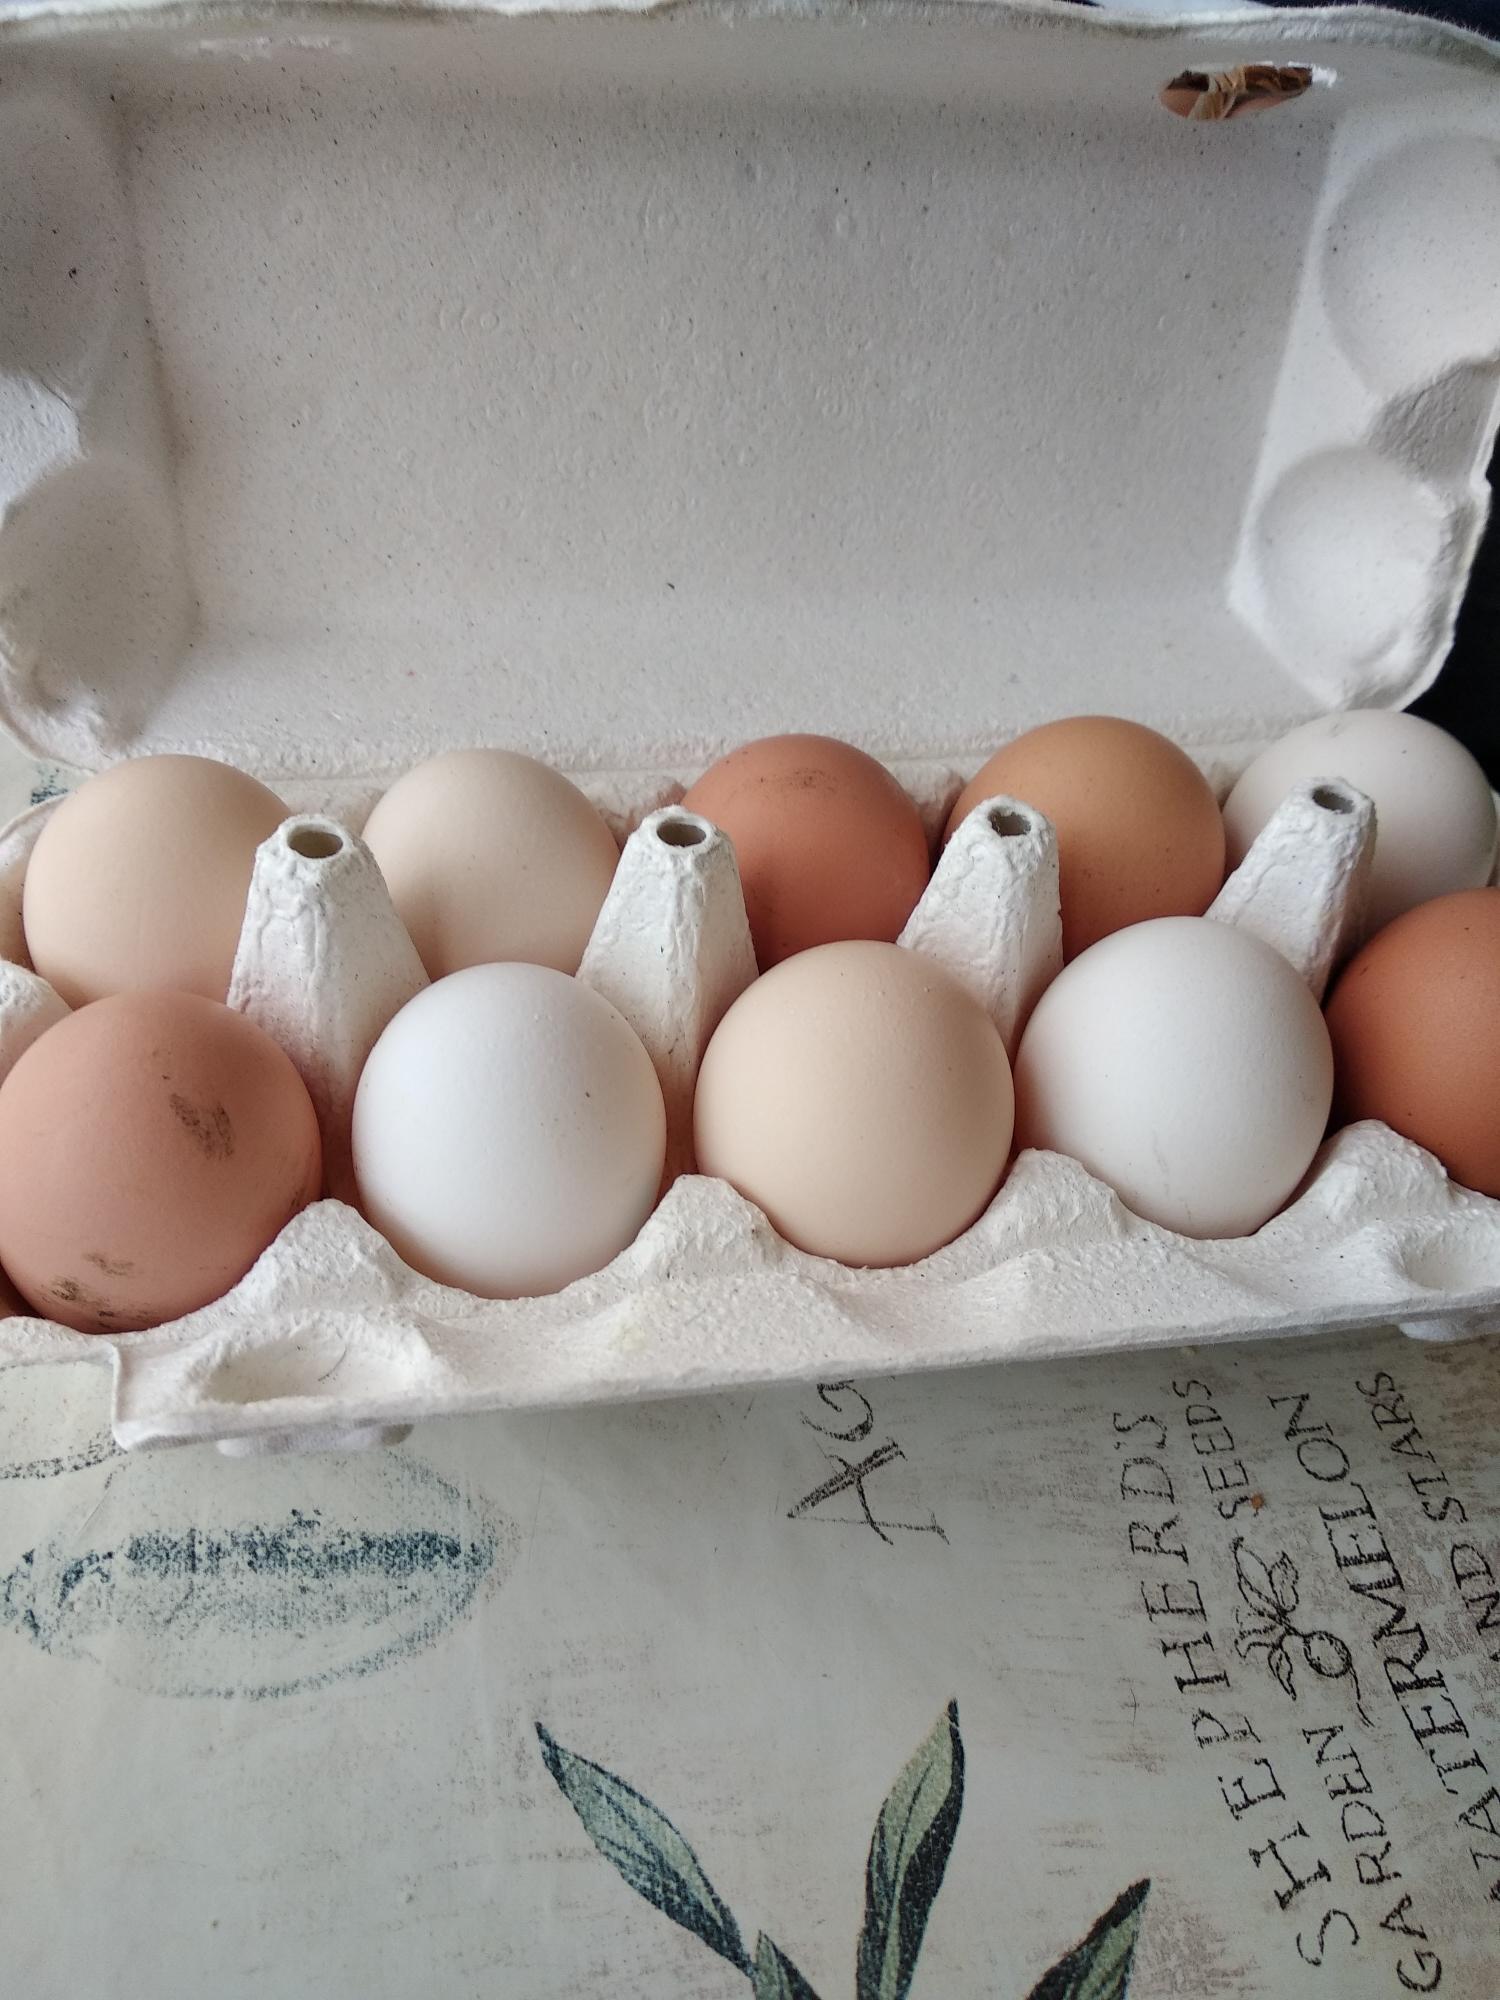 Купить инкубационное яйцо кучинской. Яйцо гусиное инкубационное. Маркировка инкубационного яйца f7203. Книги про инкубацию яиц. Печать на яйце Биг 6 Словения.